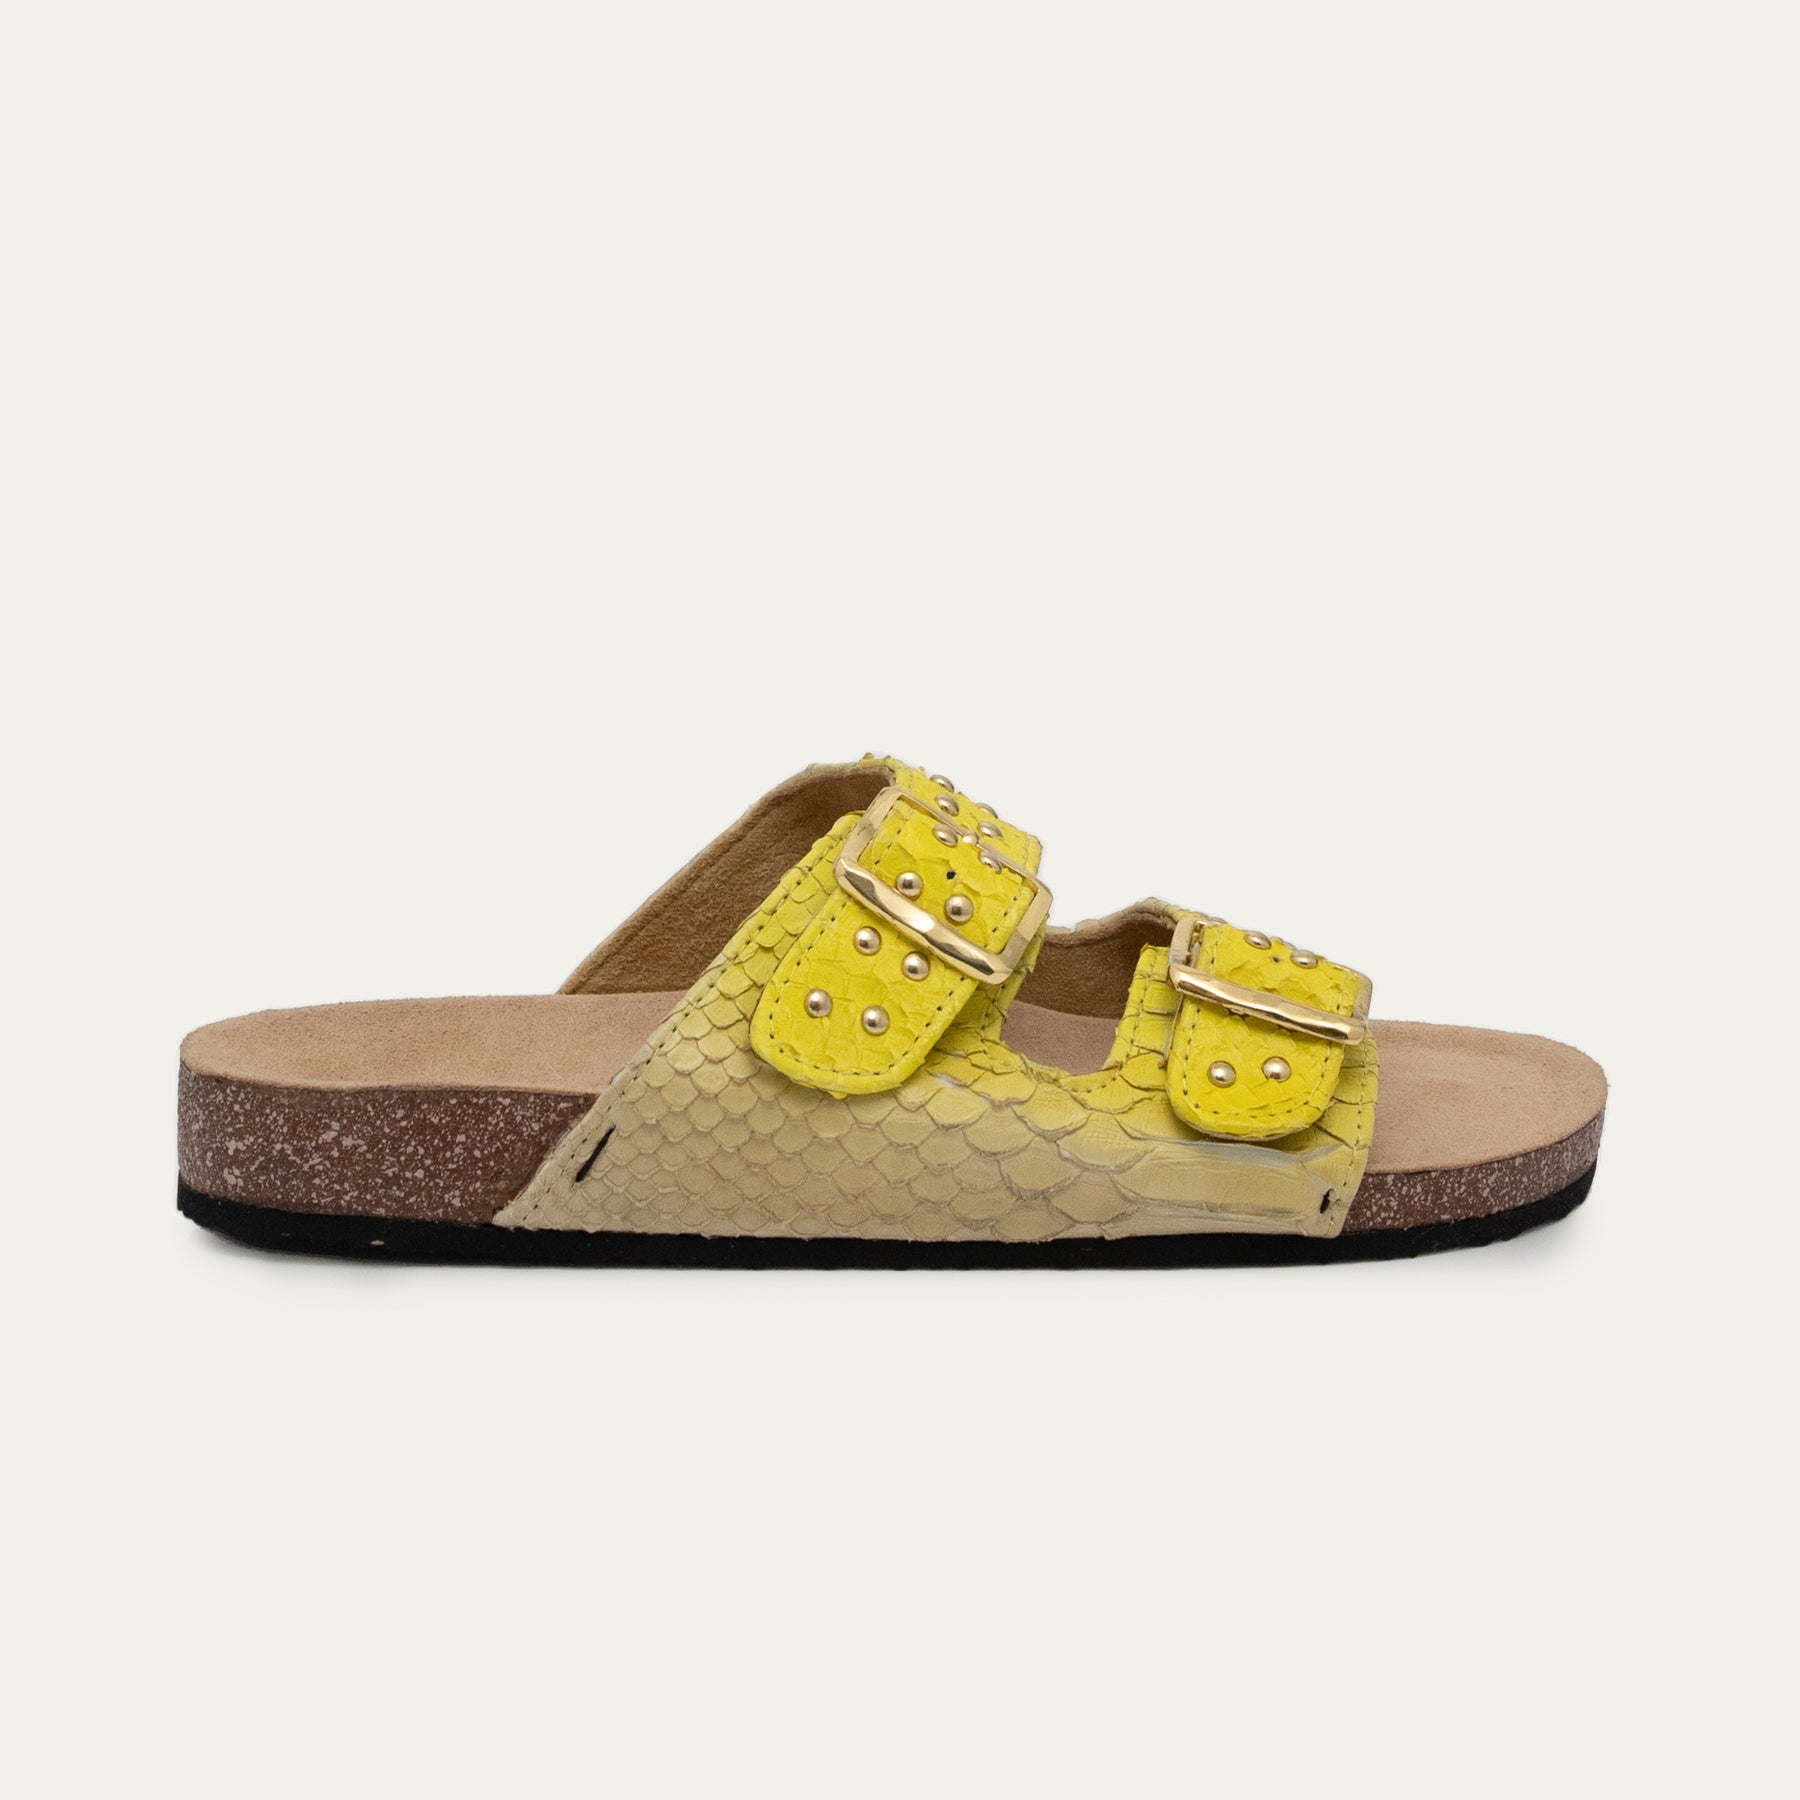 Sandales jaunes pour une touche de couleur